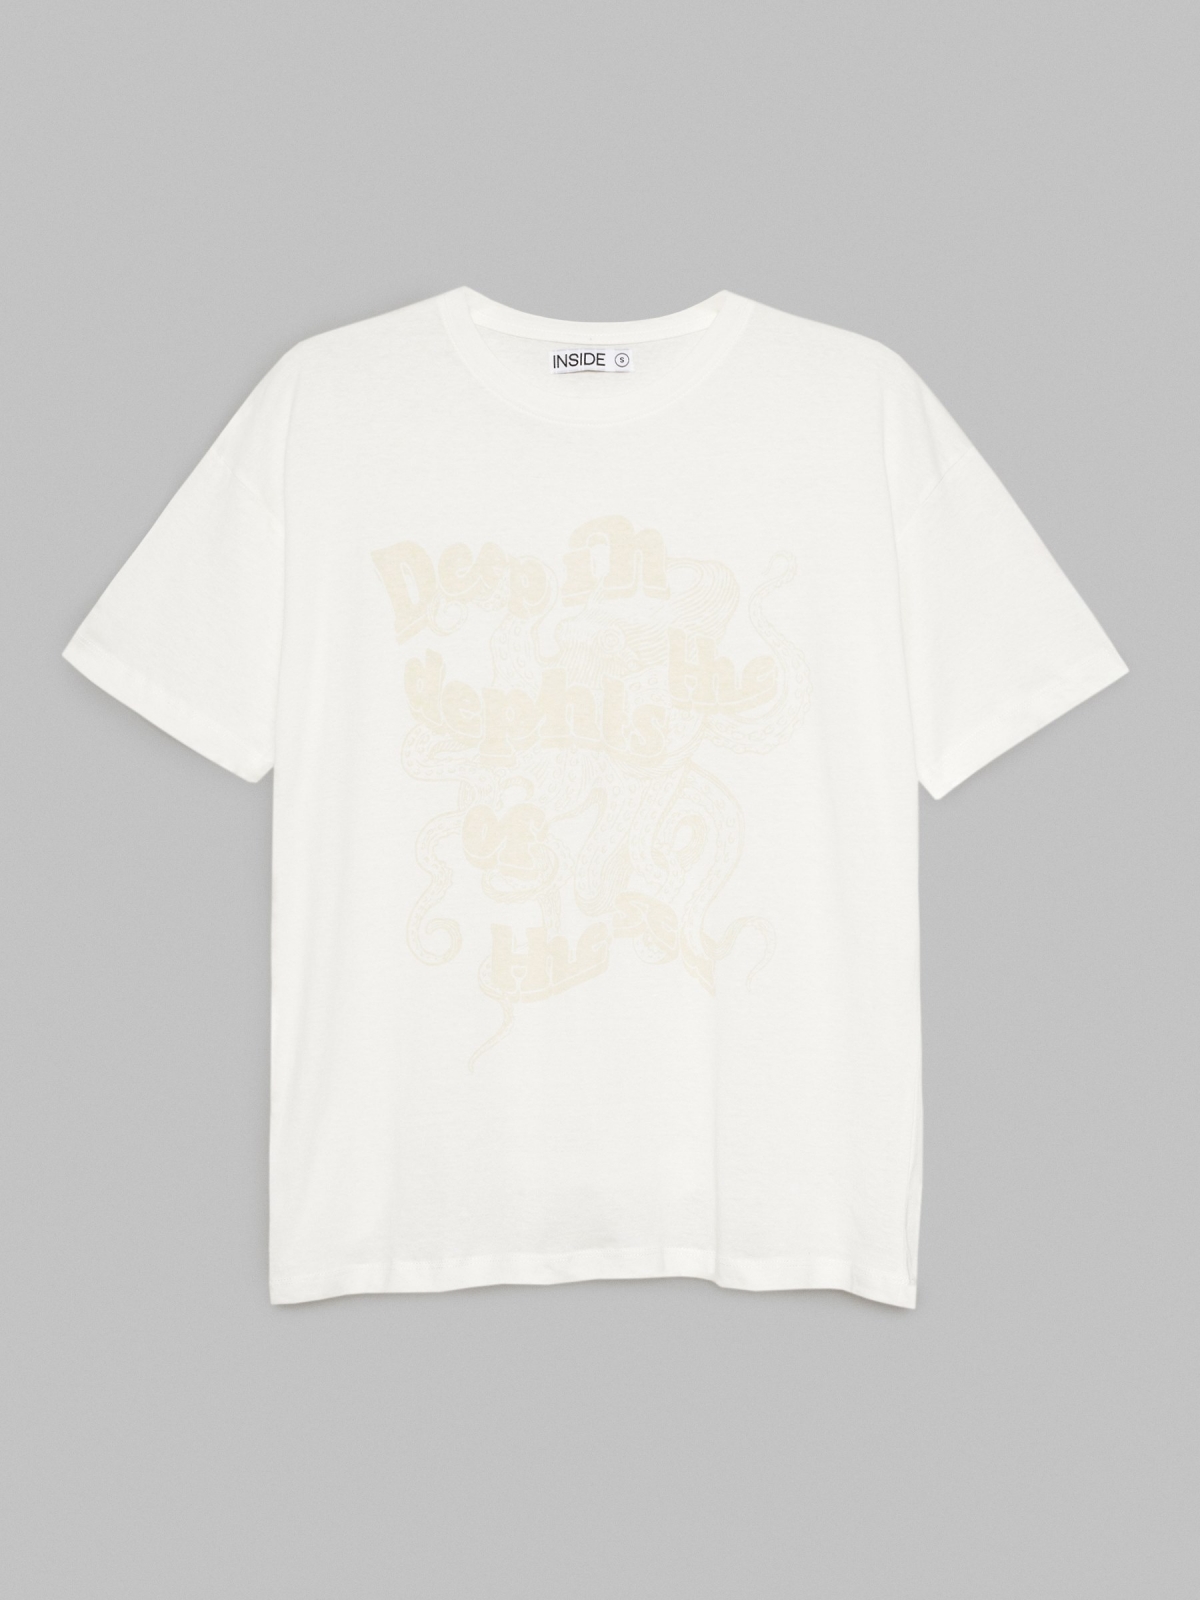  T-shirt impressa em sobredimensionado off white